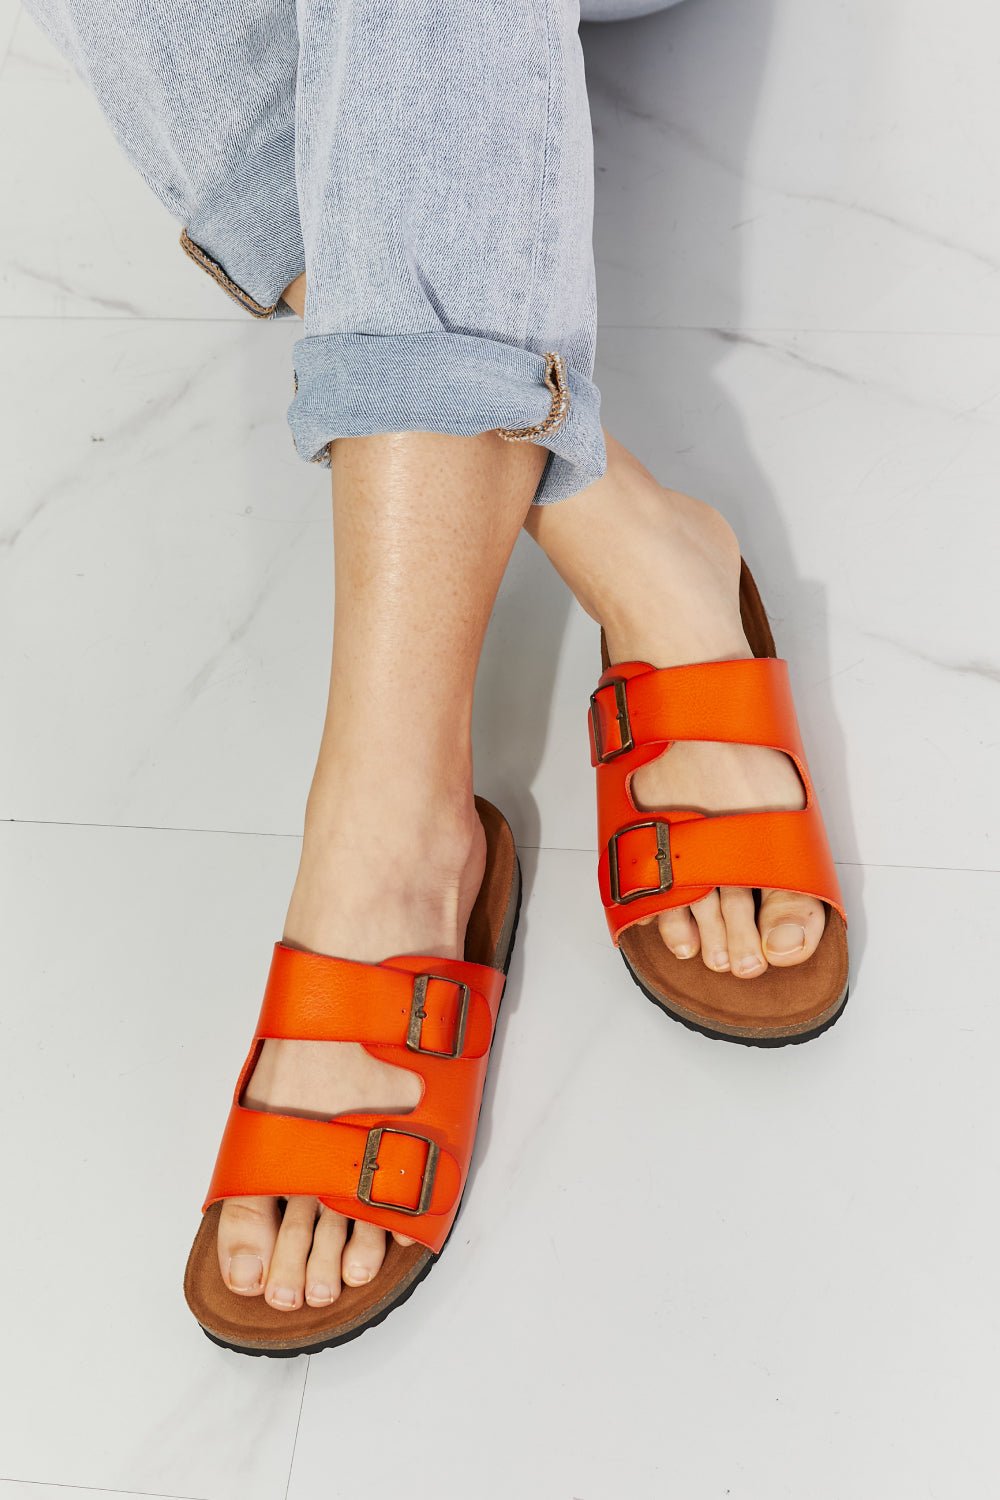 MMShoes Feeling Alive Double Banded Slide Sandals in Orange - OMG! Rose